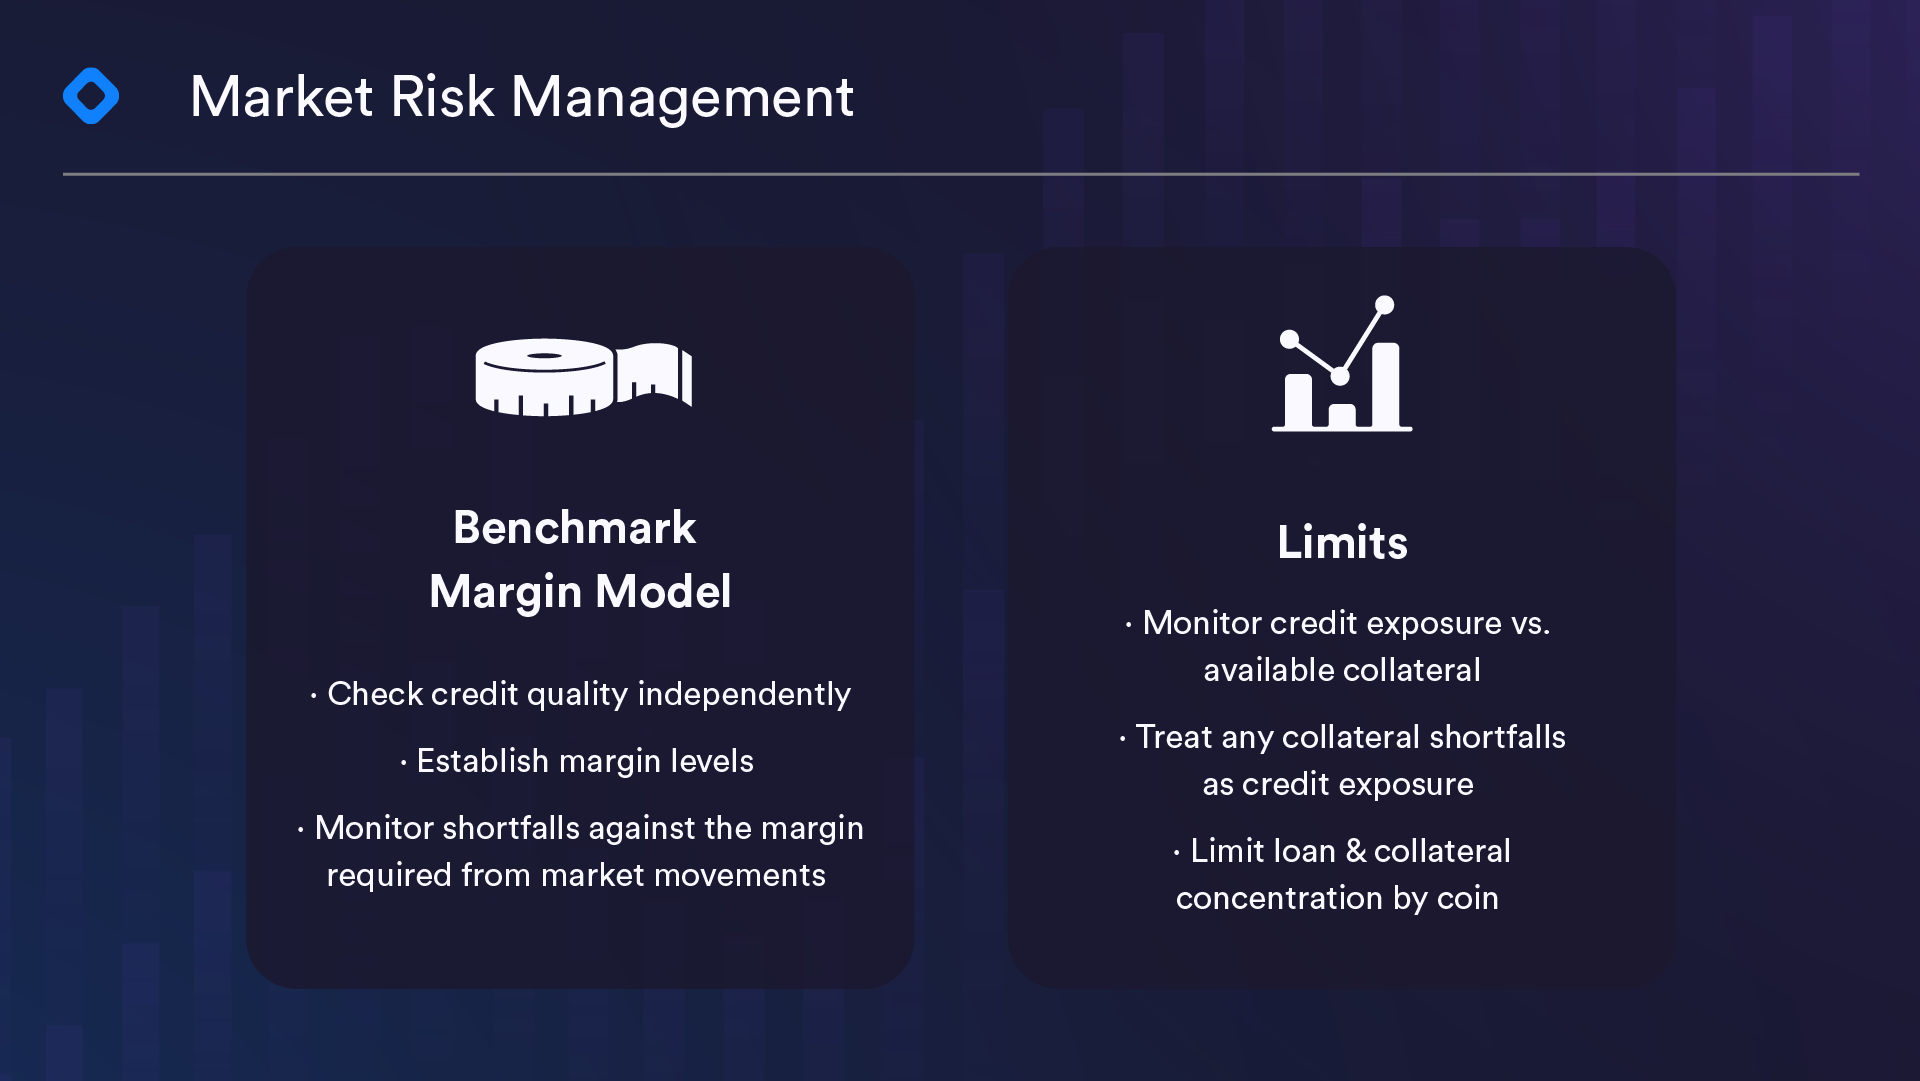 Market Risk Management image